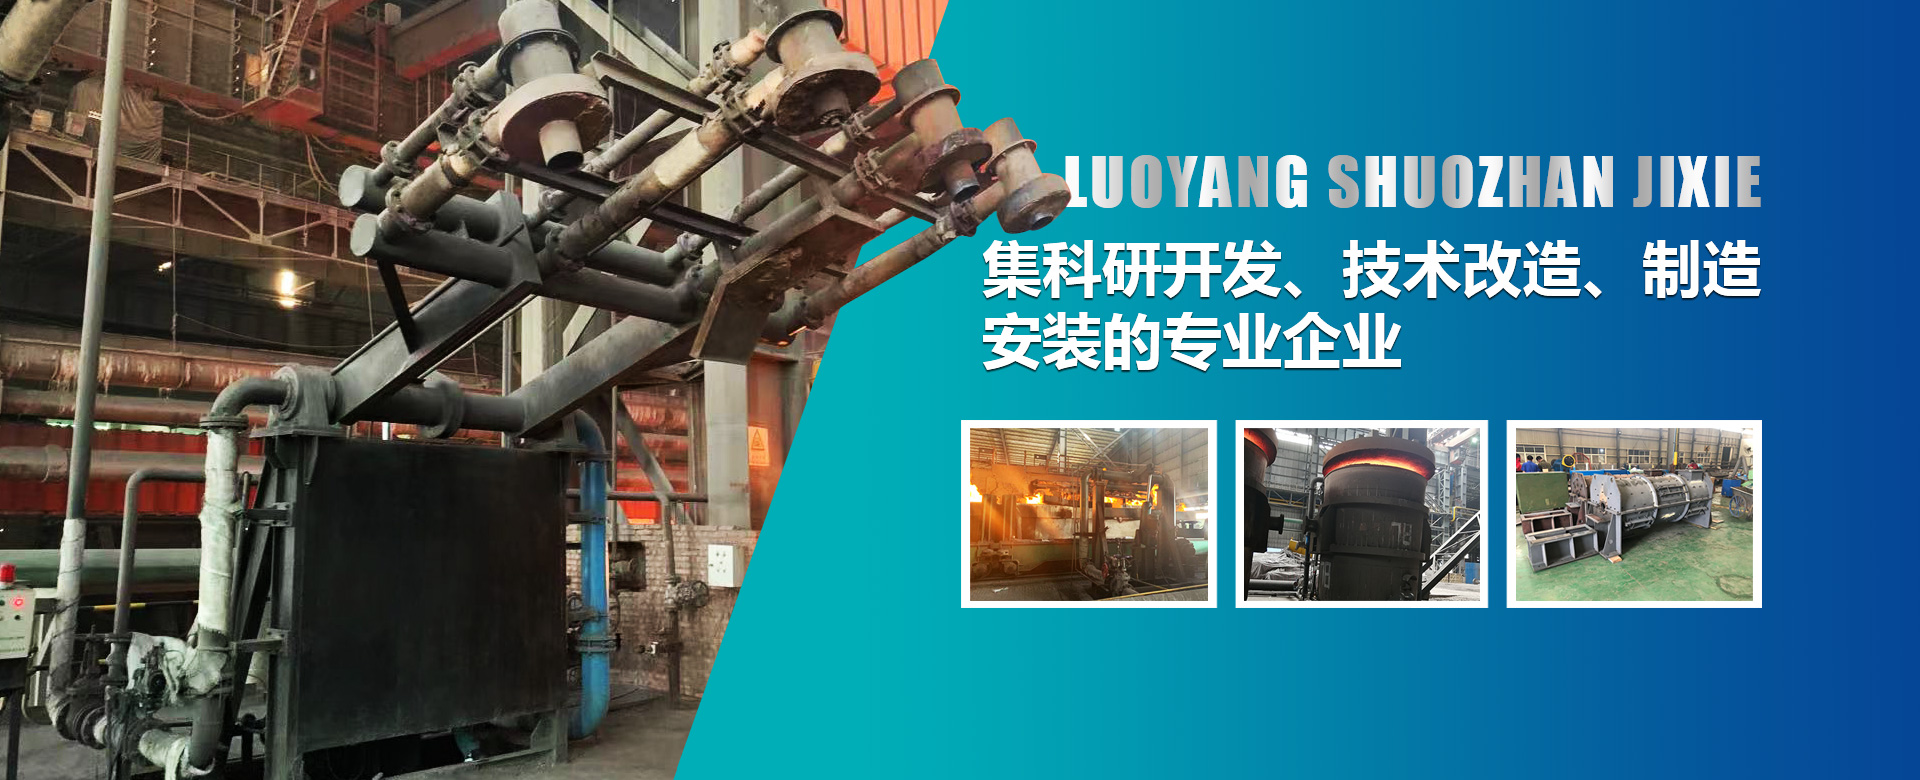 烘烤器是鋼鐵廠生產的必須設備，也是鋼鐵生產過程中能耗較大的設備